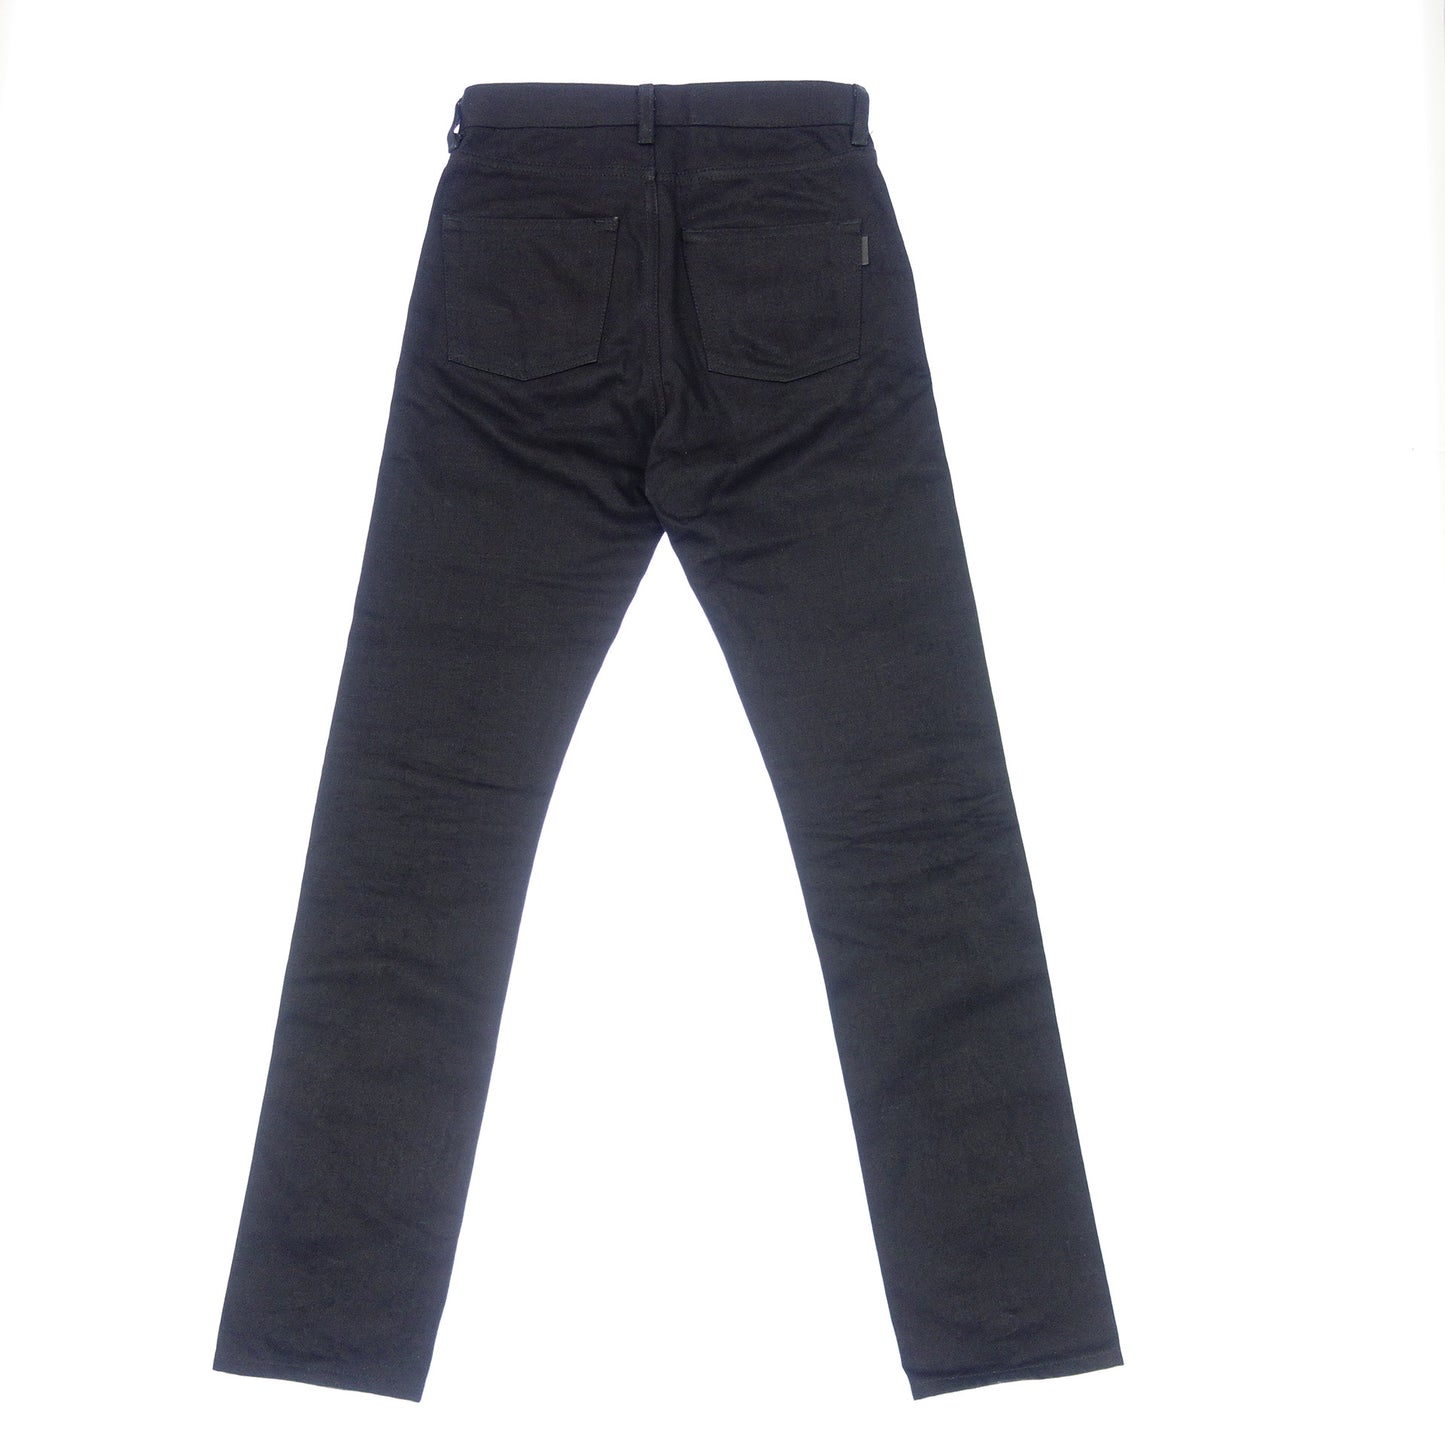 Good Condition◆Saint Laurent Denim Pants 584475 Women's Size 26 Black SAINT LAURENT [AFB19] 